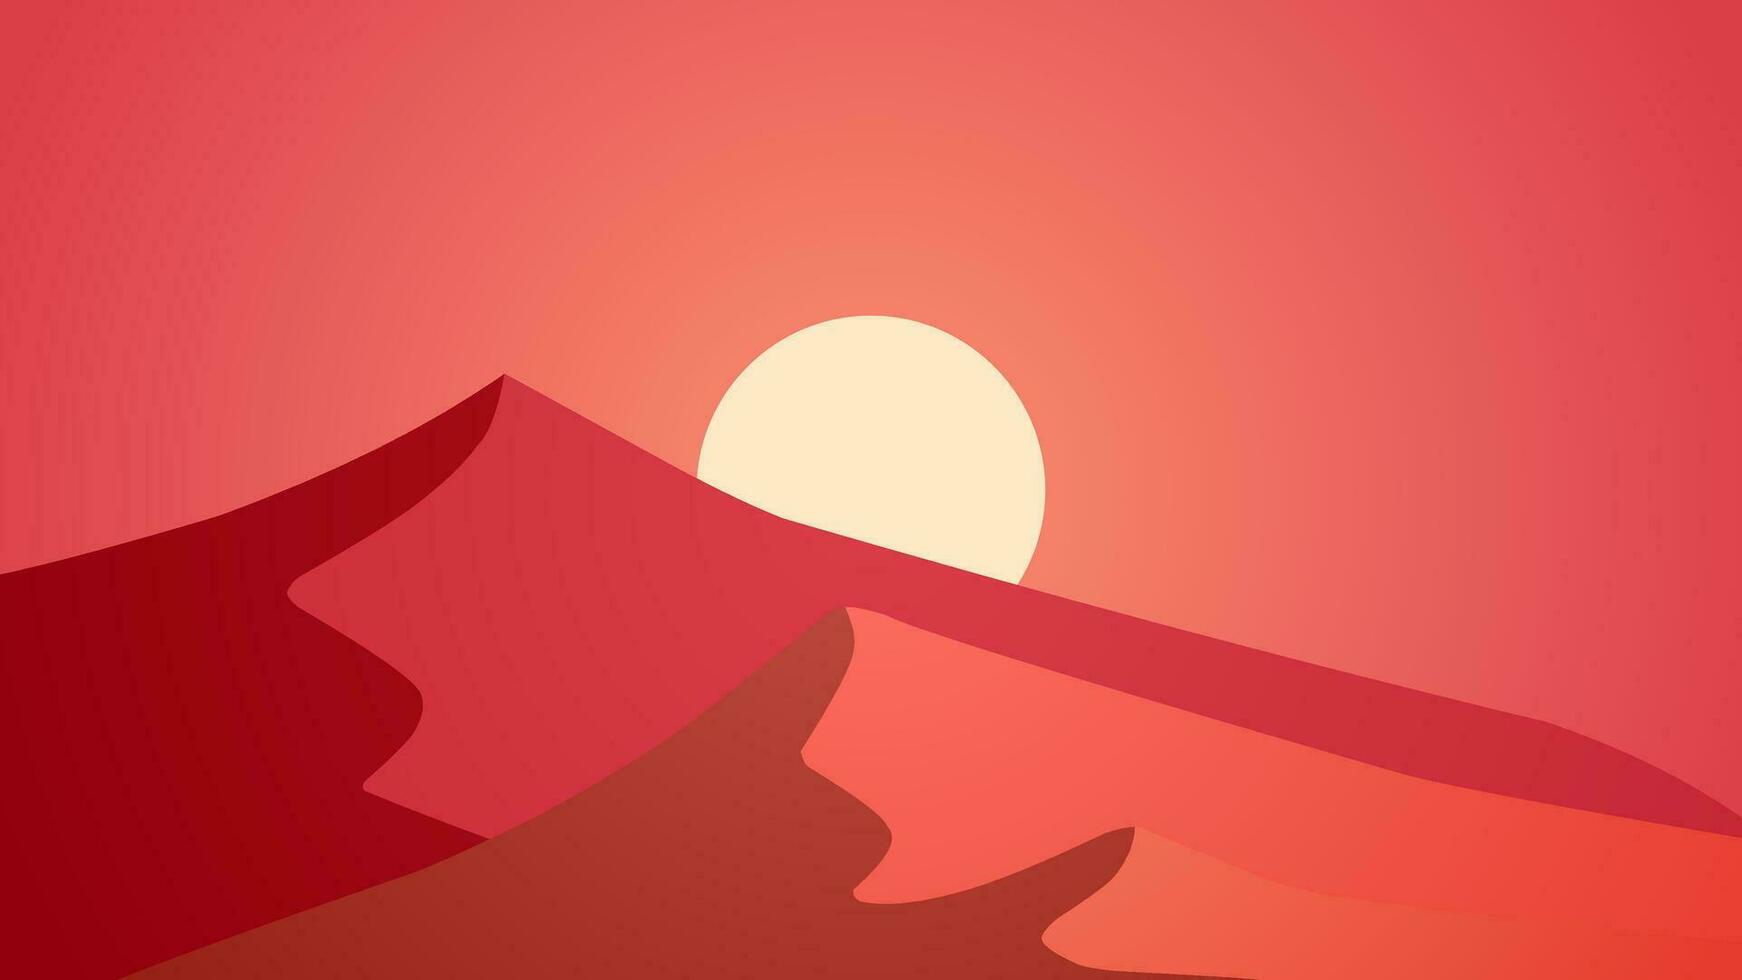 Desert landscape vector illustration. Red sand desert scenery with heat sun and dune. Subtropical desert scenery for background, wallpaper or illustration